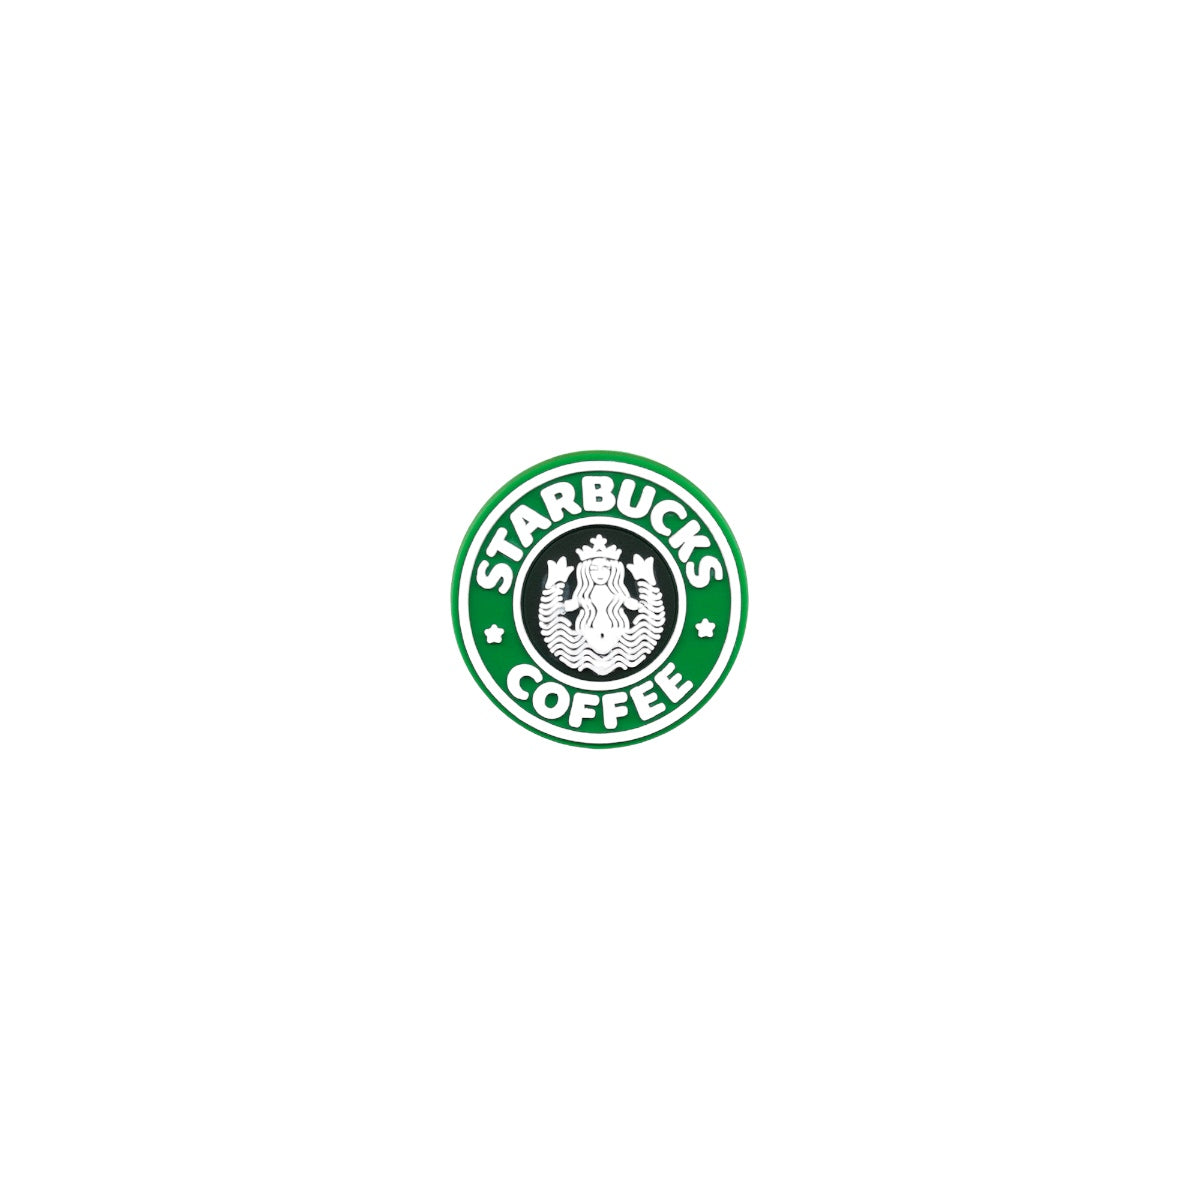 STARBUCKS COFFEE Pin